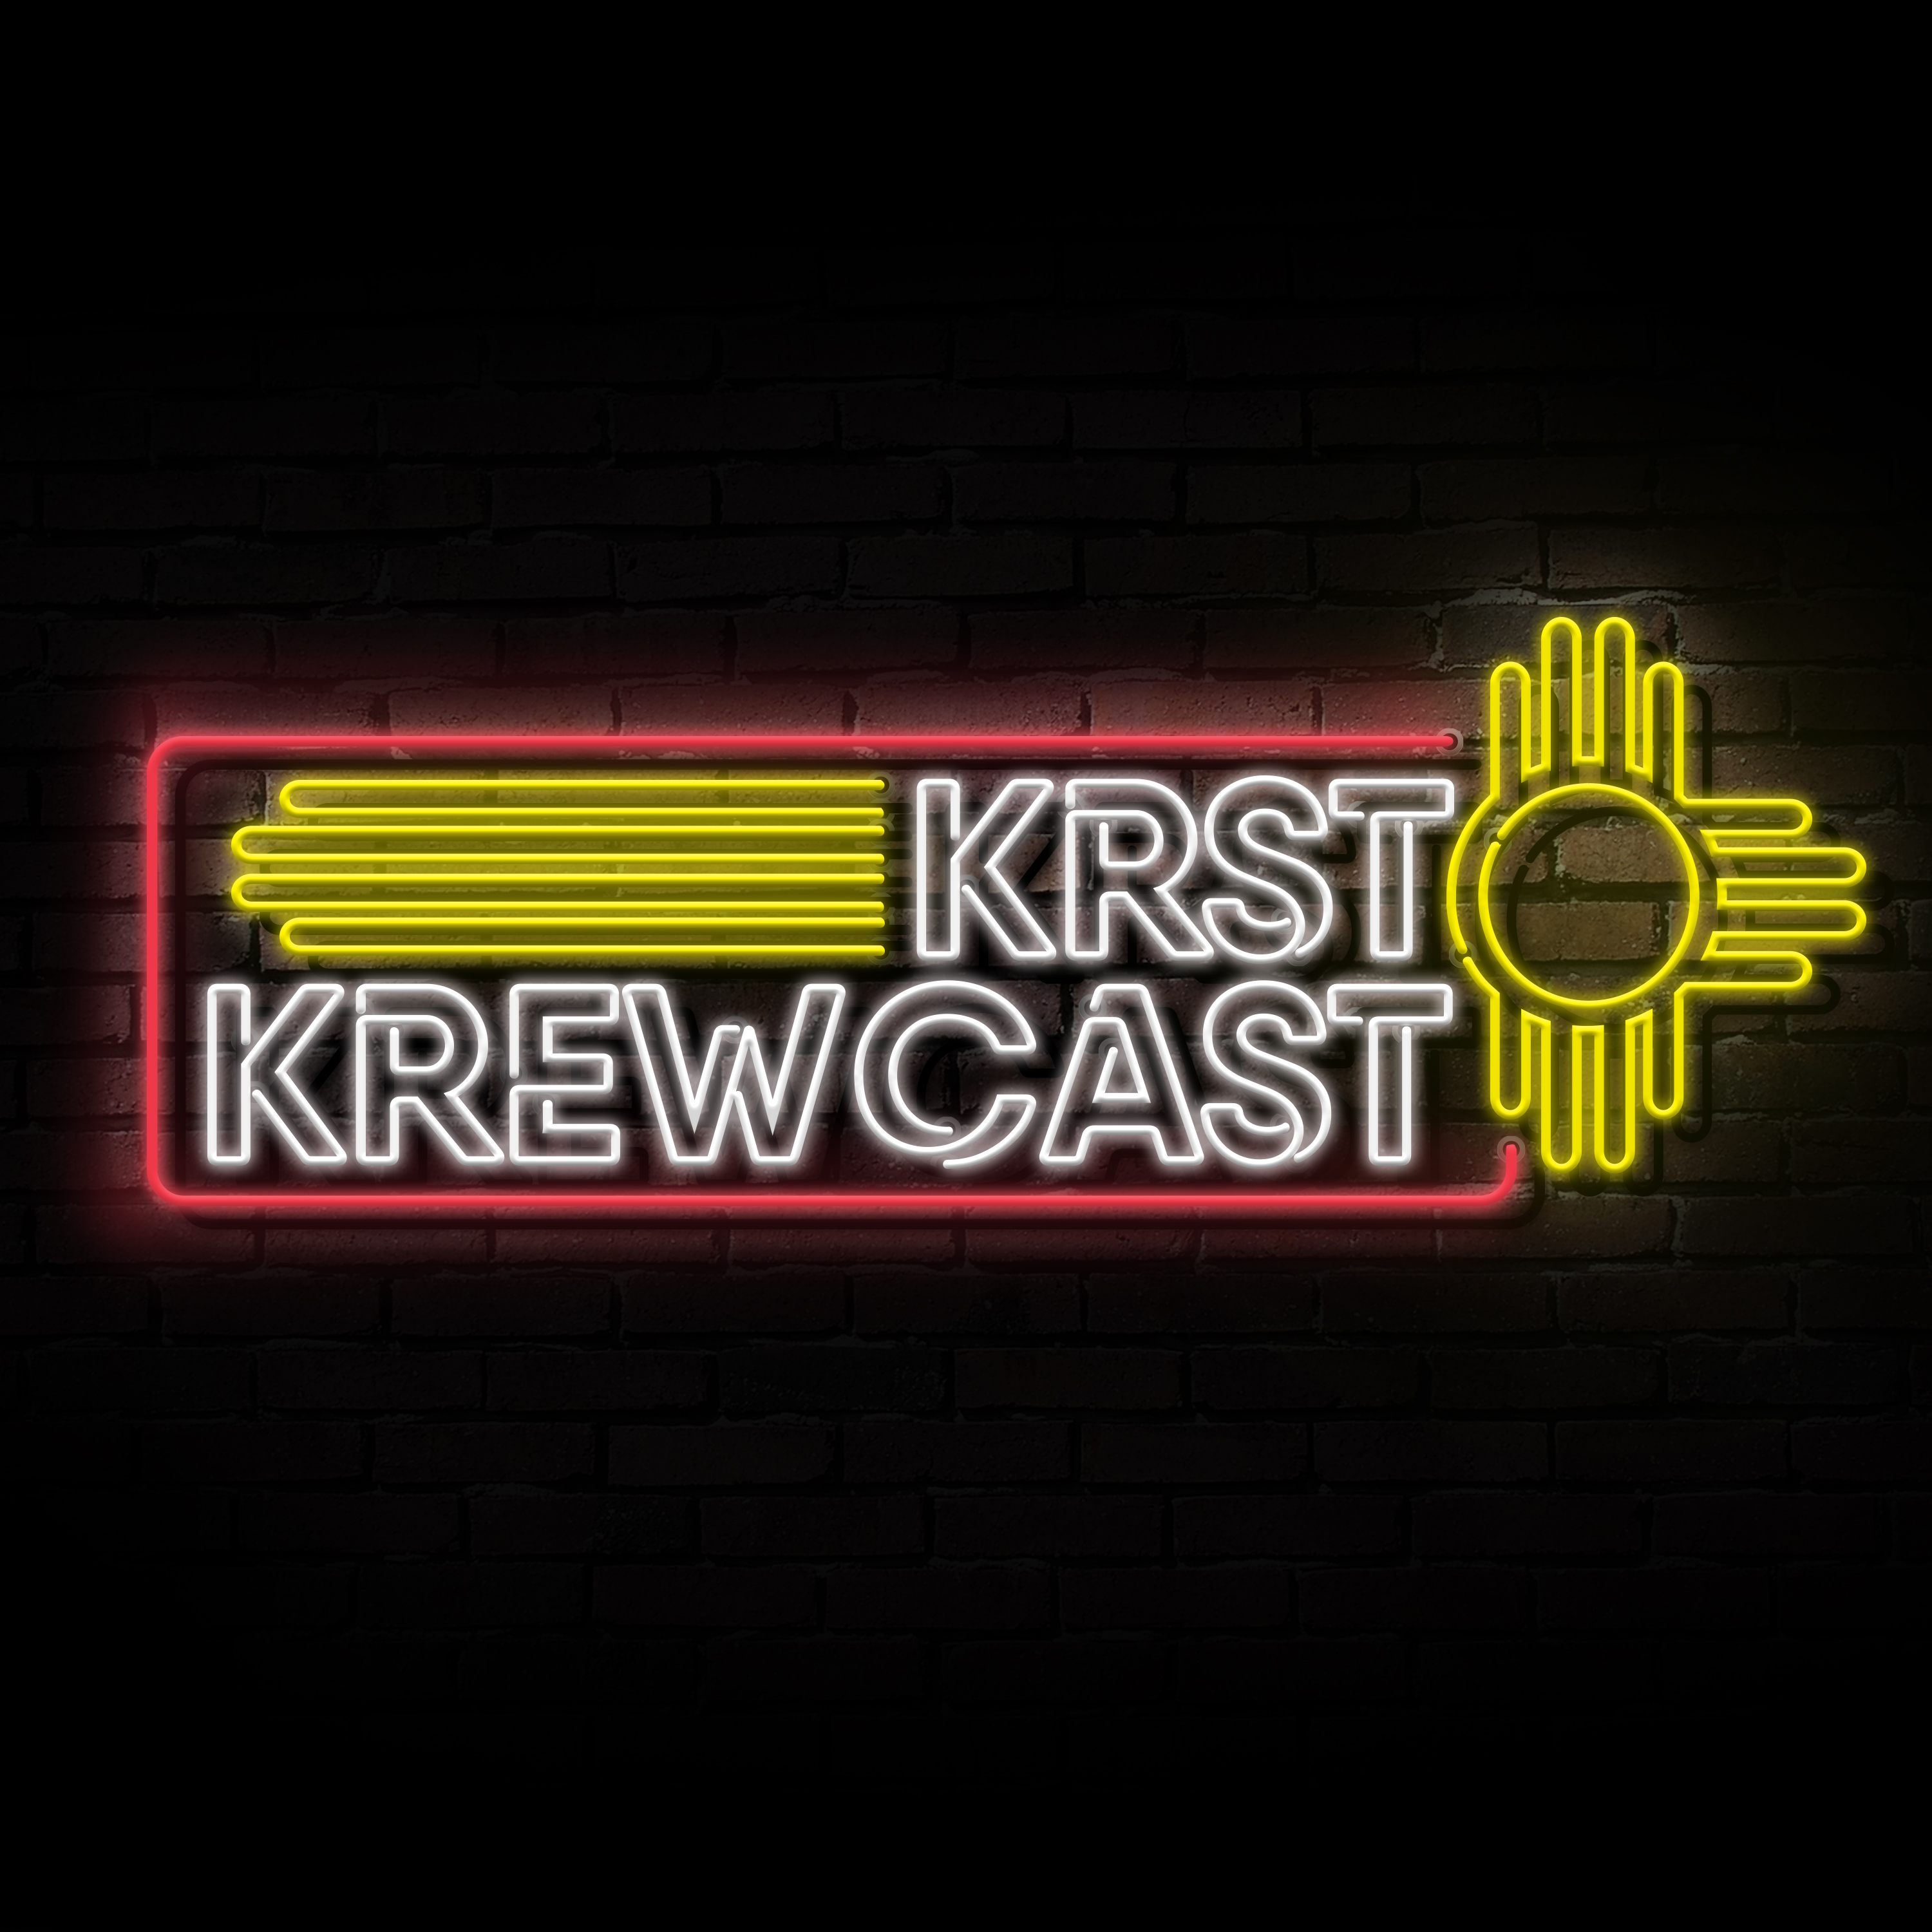 The 923 KRST Krewcast